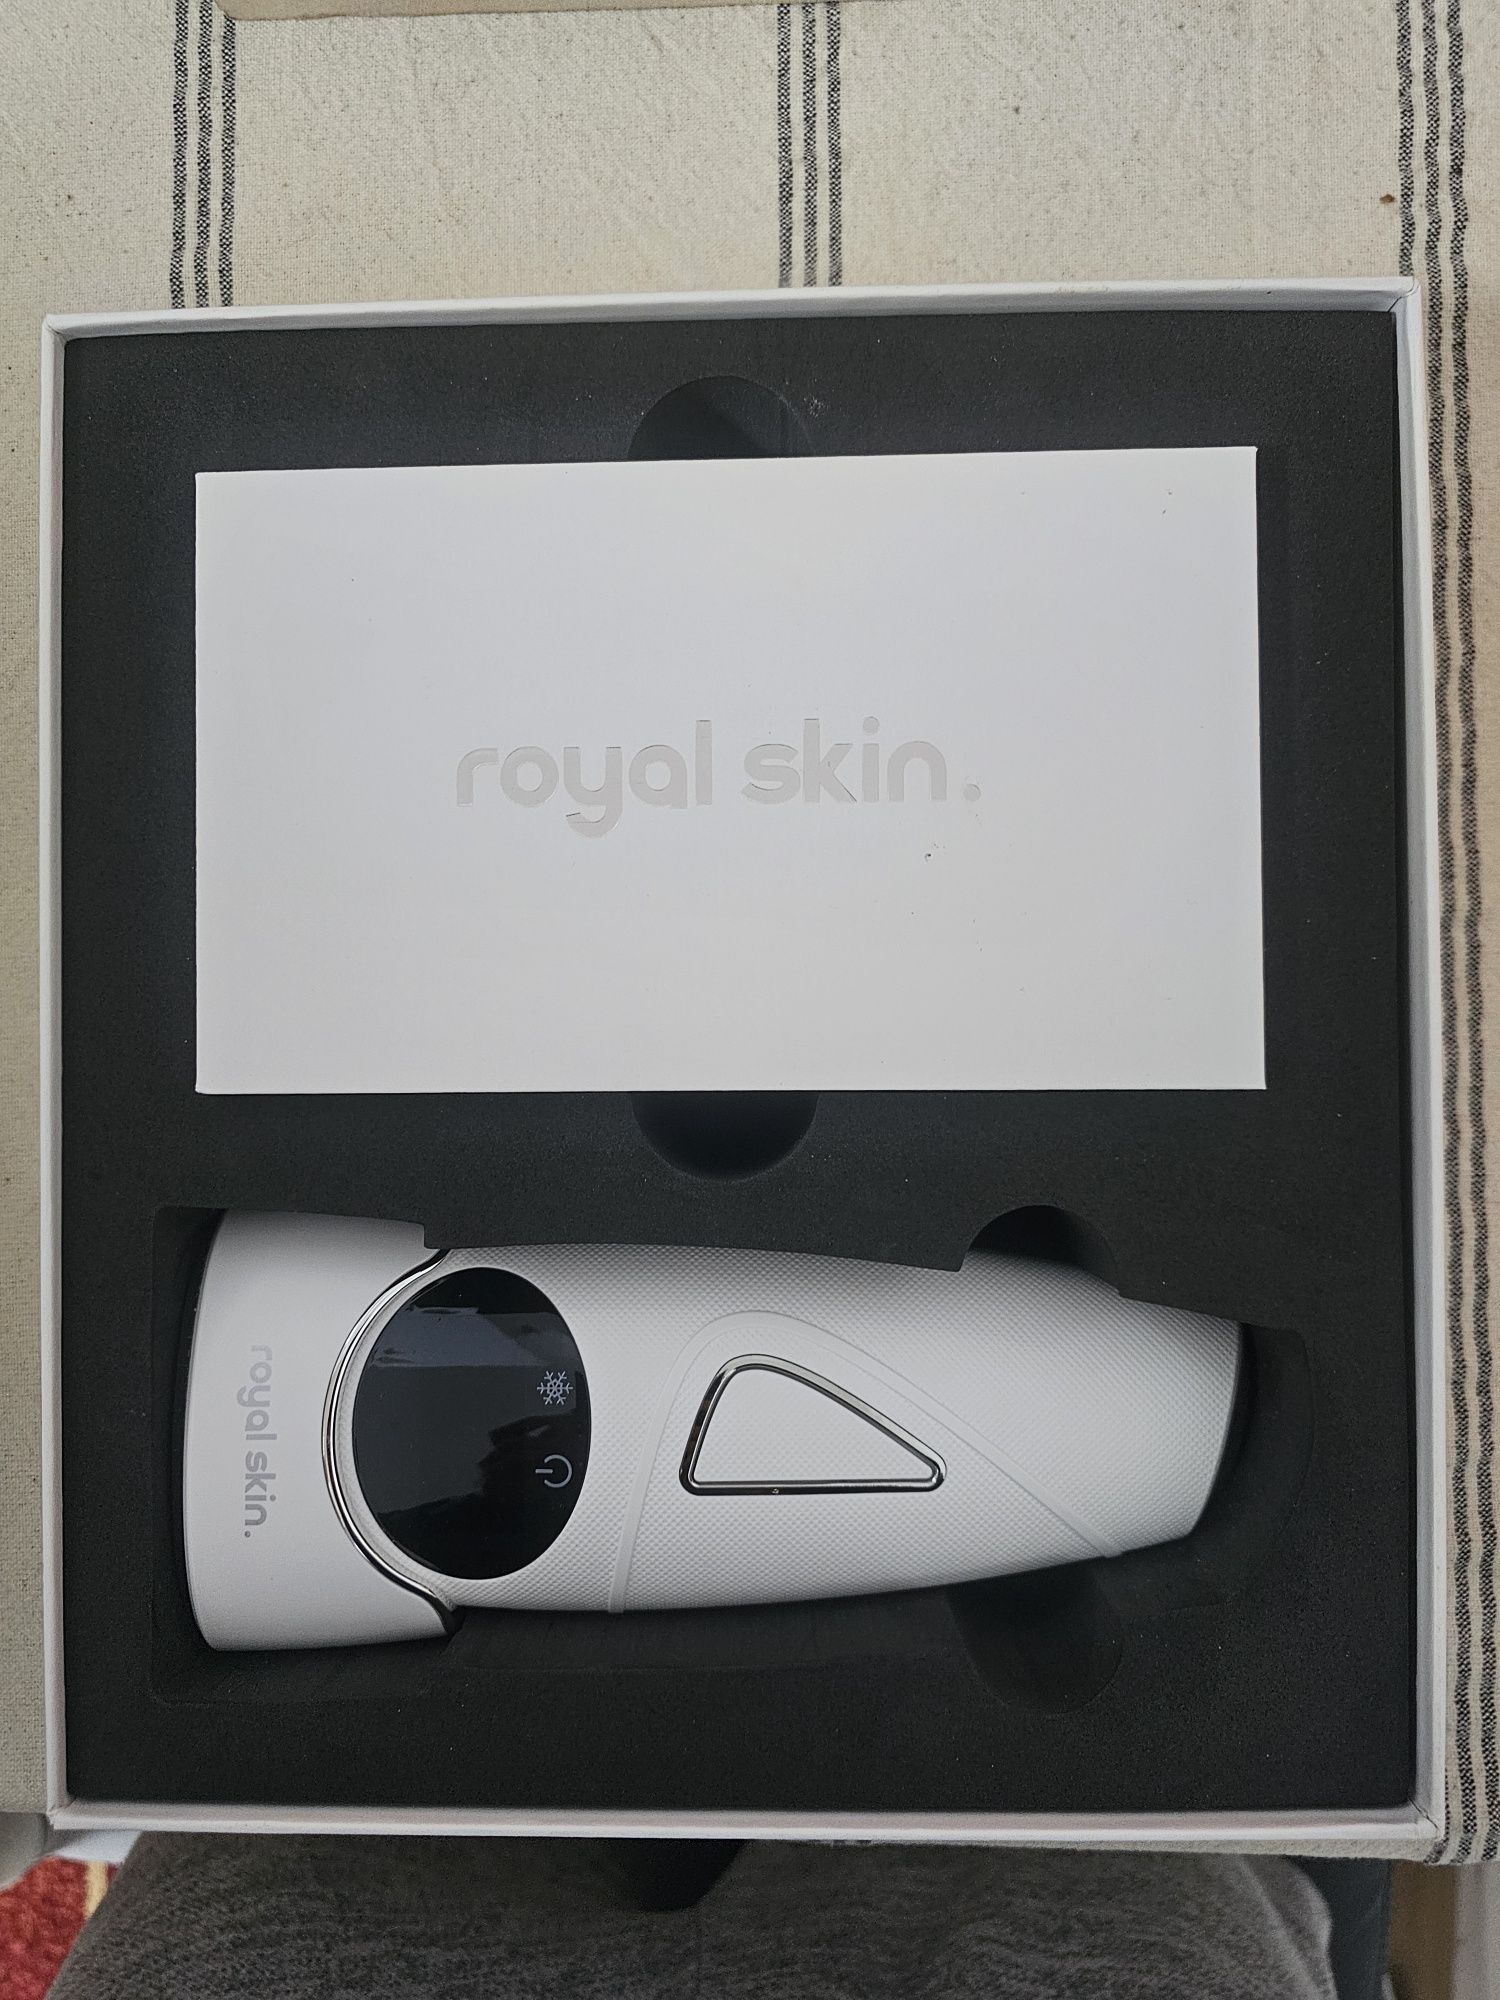 Epilator laser Royal Skin